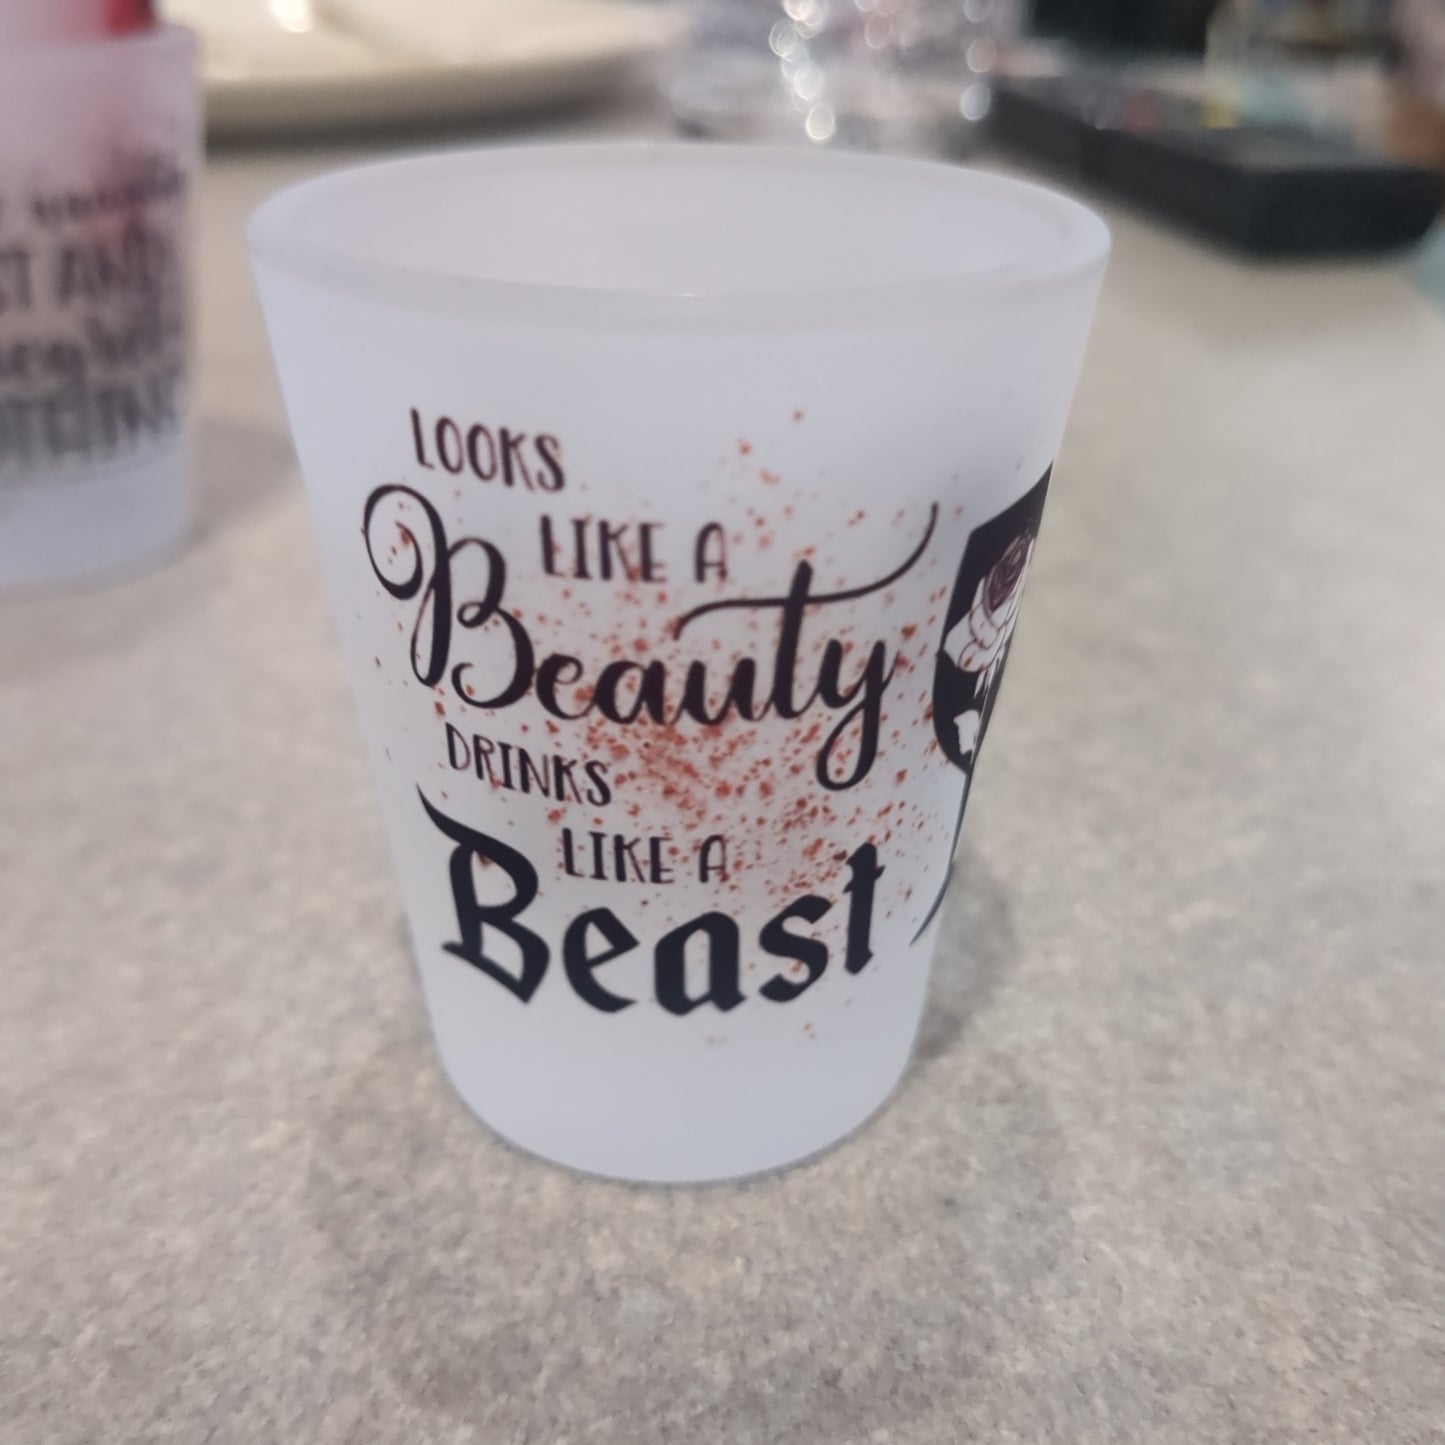 Glass shot glass.  Looks like a beauty drinks like a beast